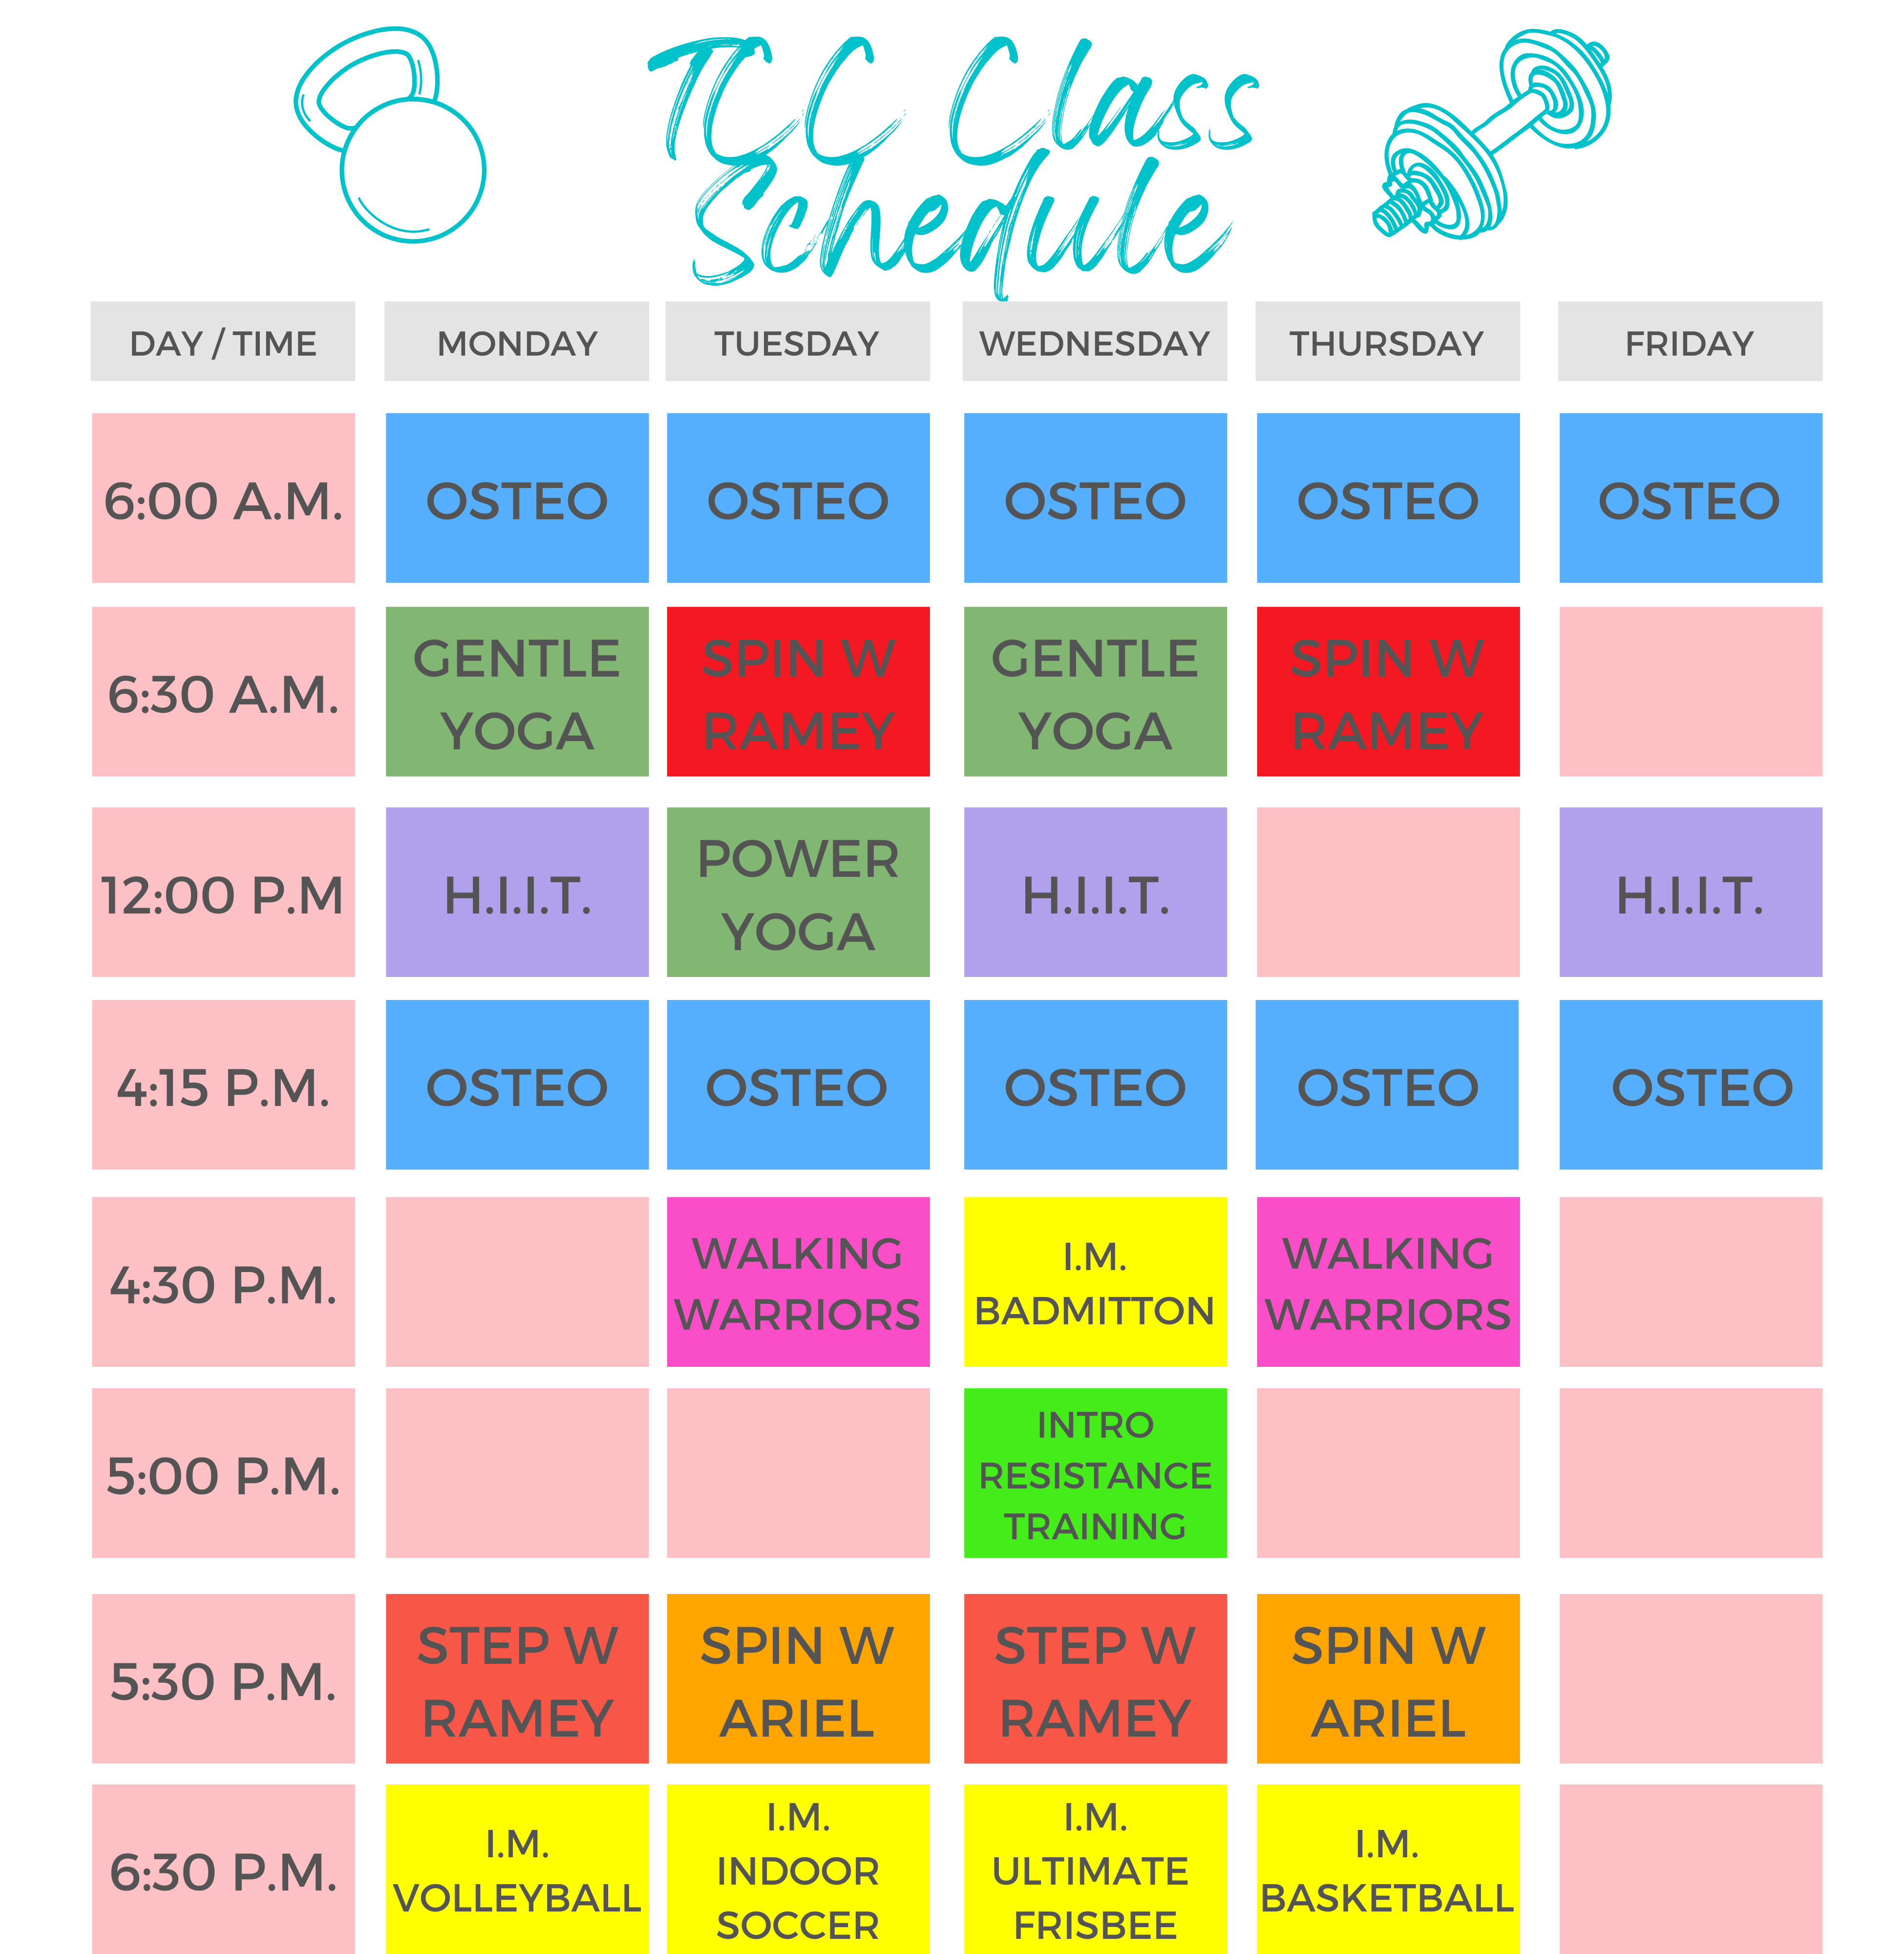 class schedule